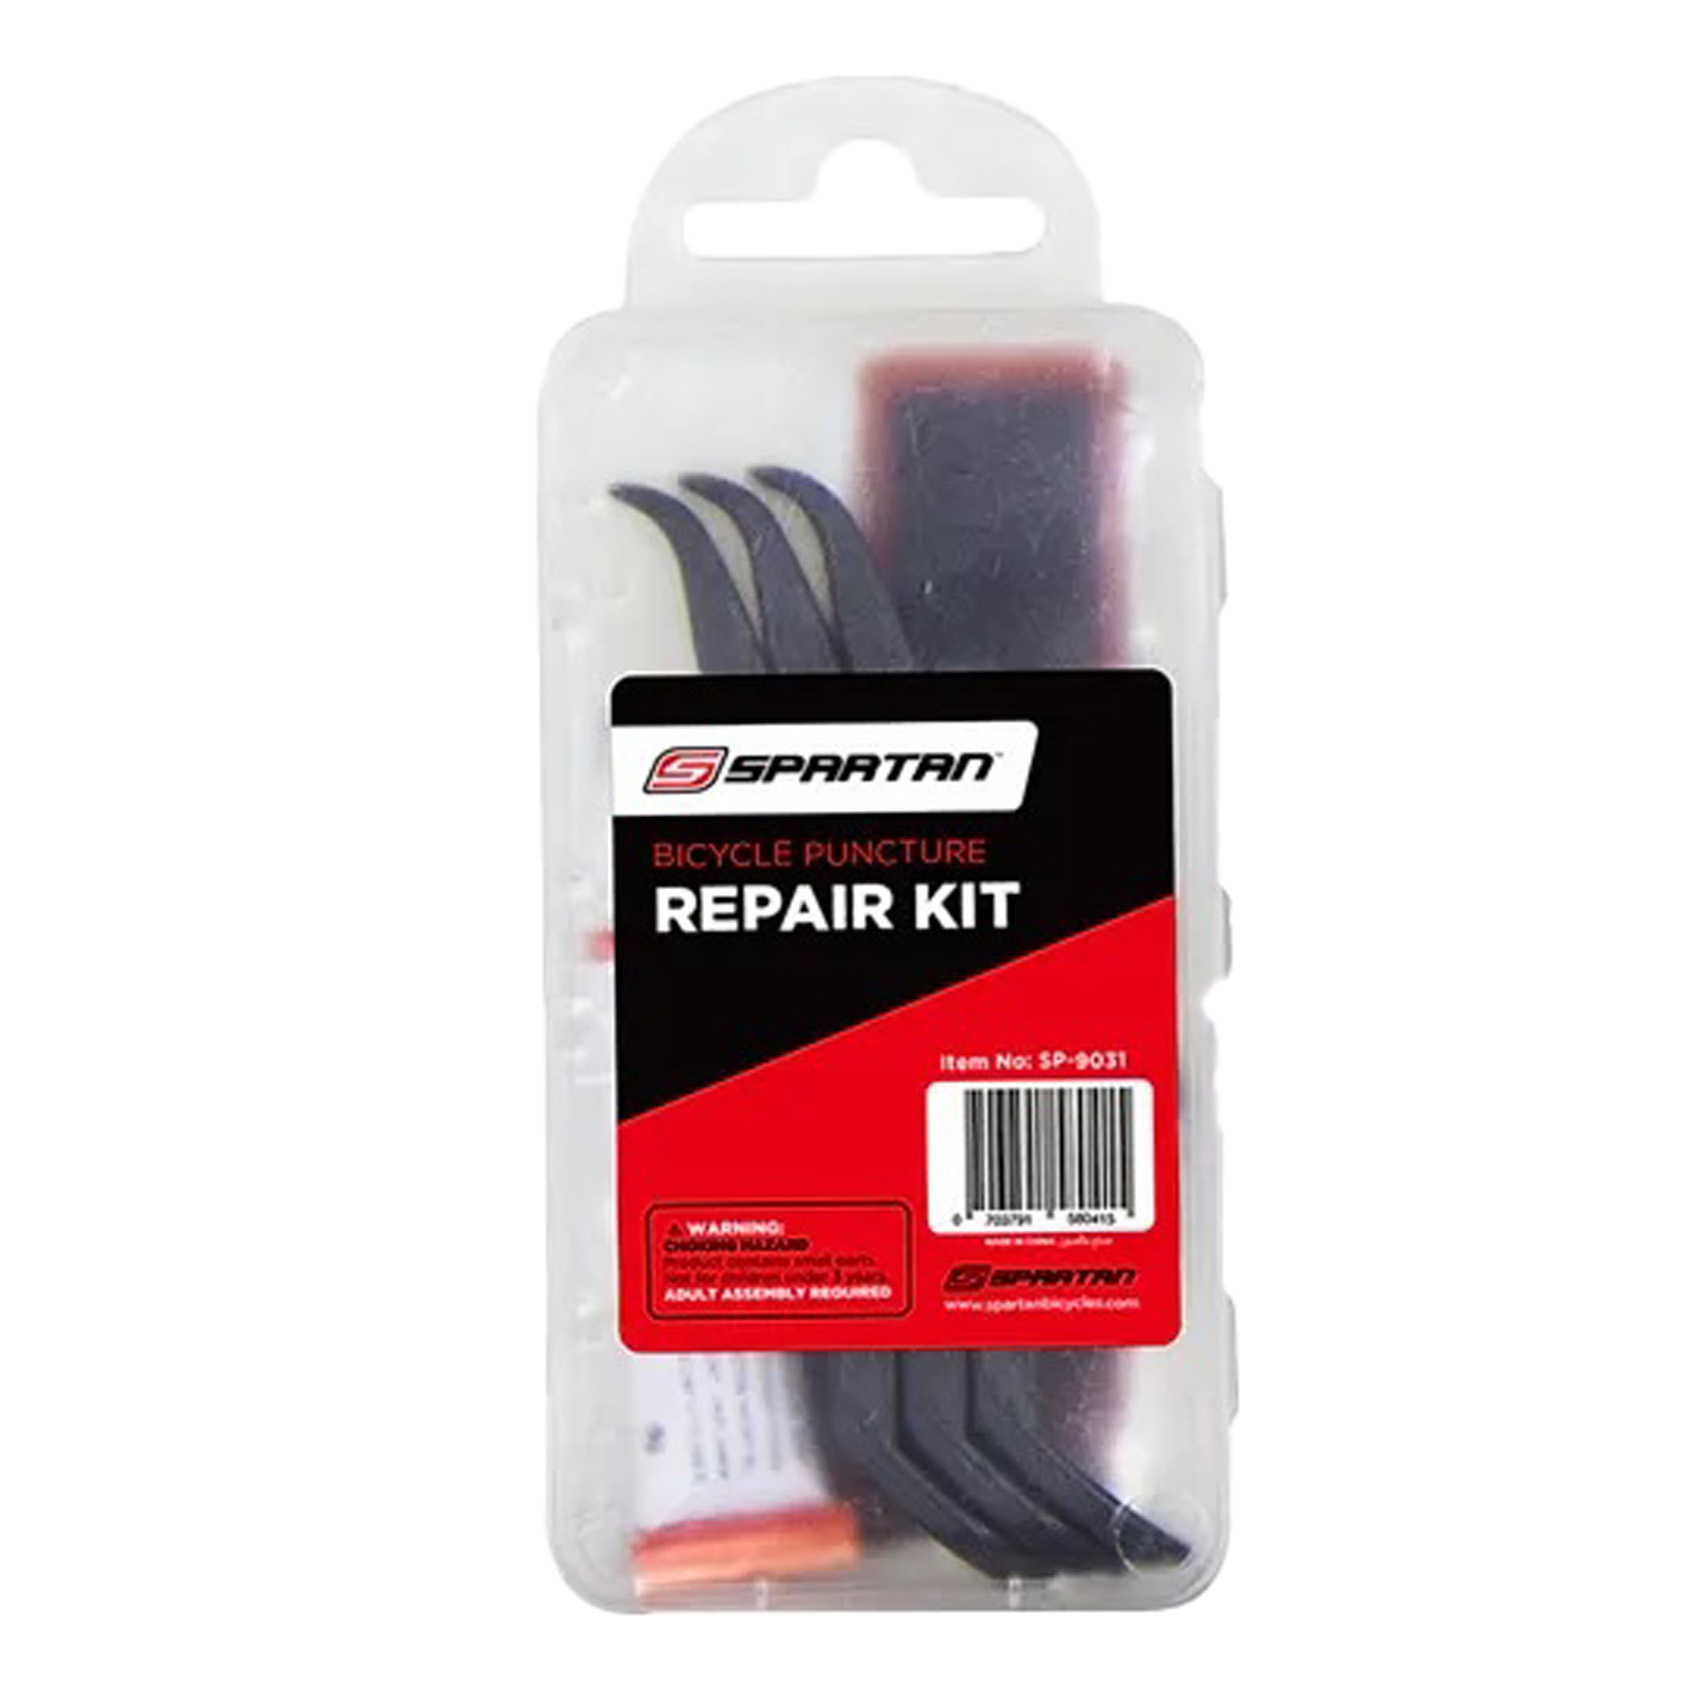 Spartan Bicycle Puncture Repair Kit SP-9031 Black